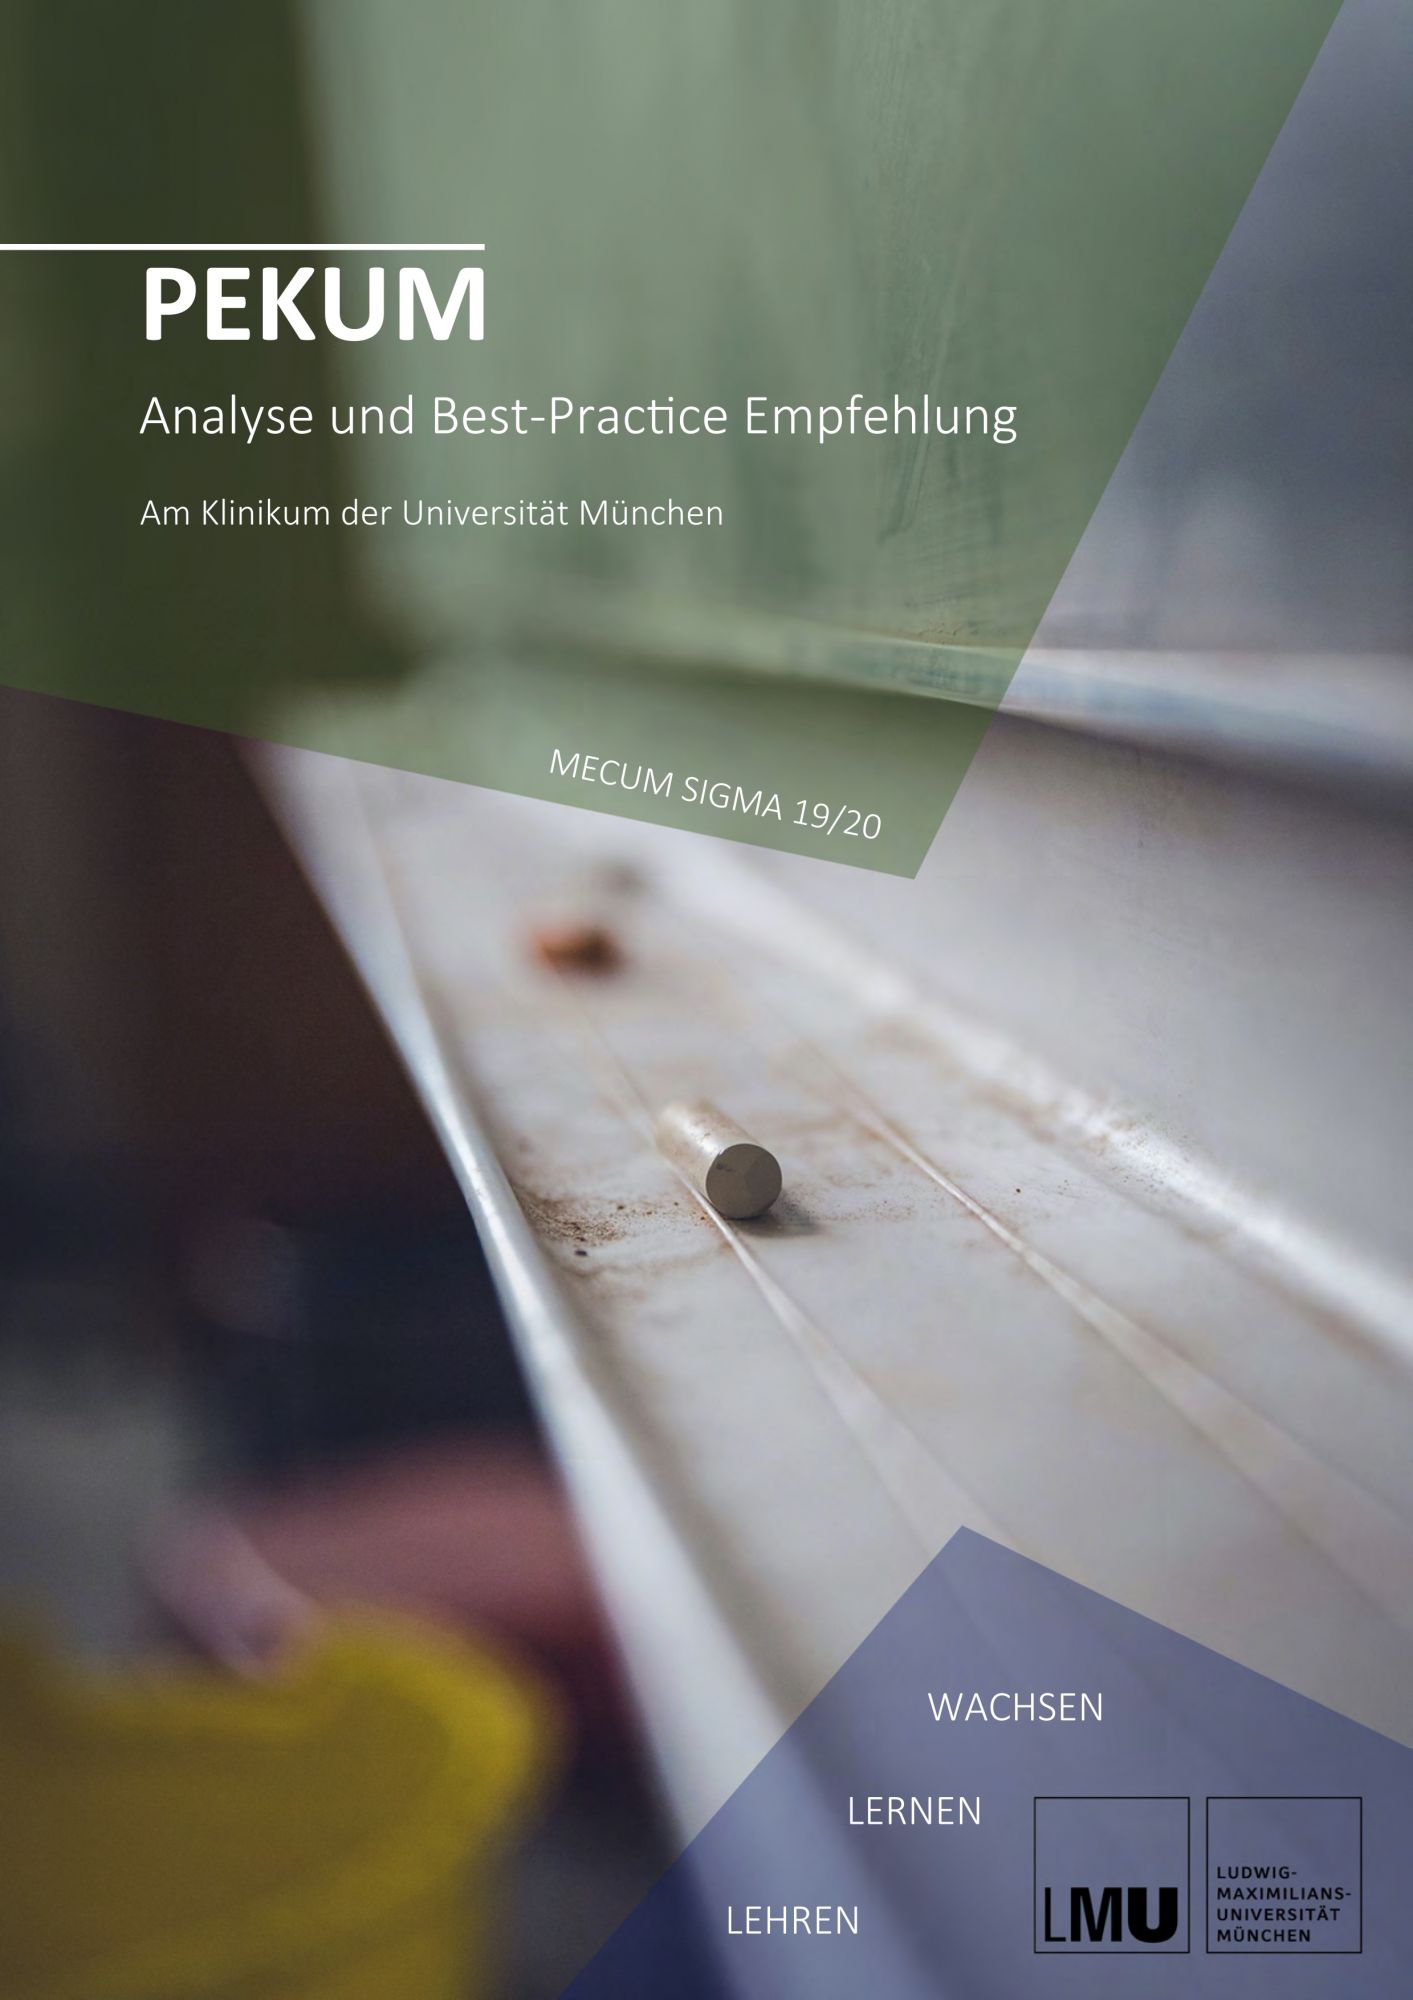 Projektphase: Personal Entwicklung KUM (PEKUM) - Analyse und Best-Practice Empfehlungen